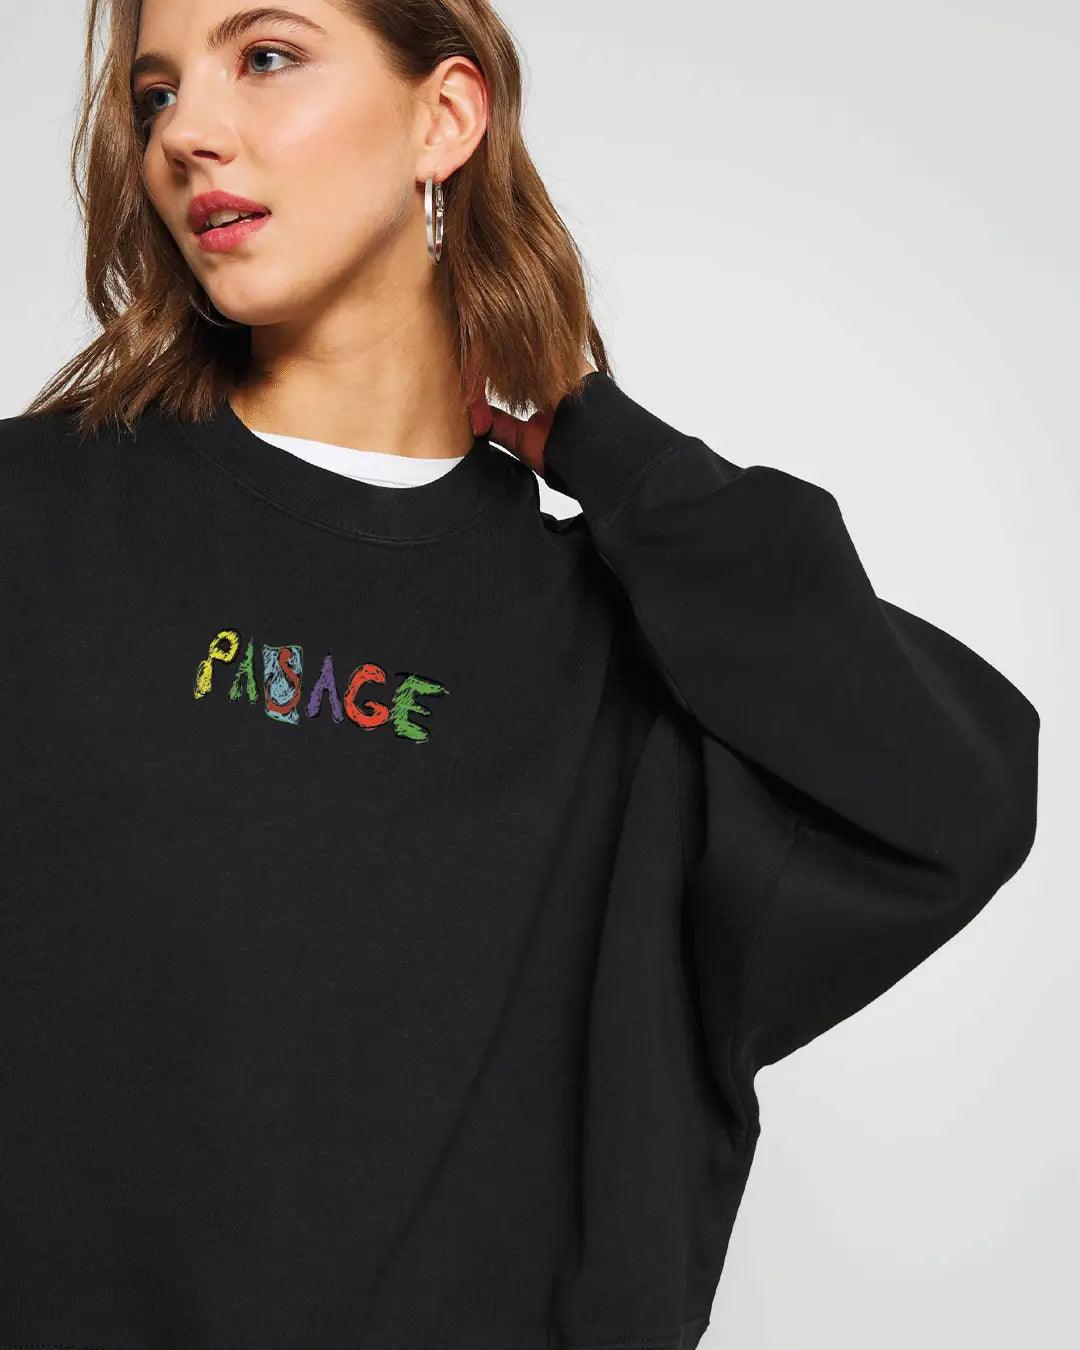 Same Old Oversize Kadın Sweatshirt PΛSΛGE